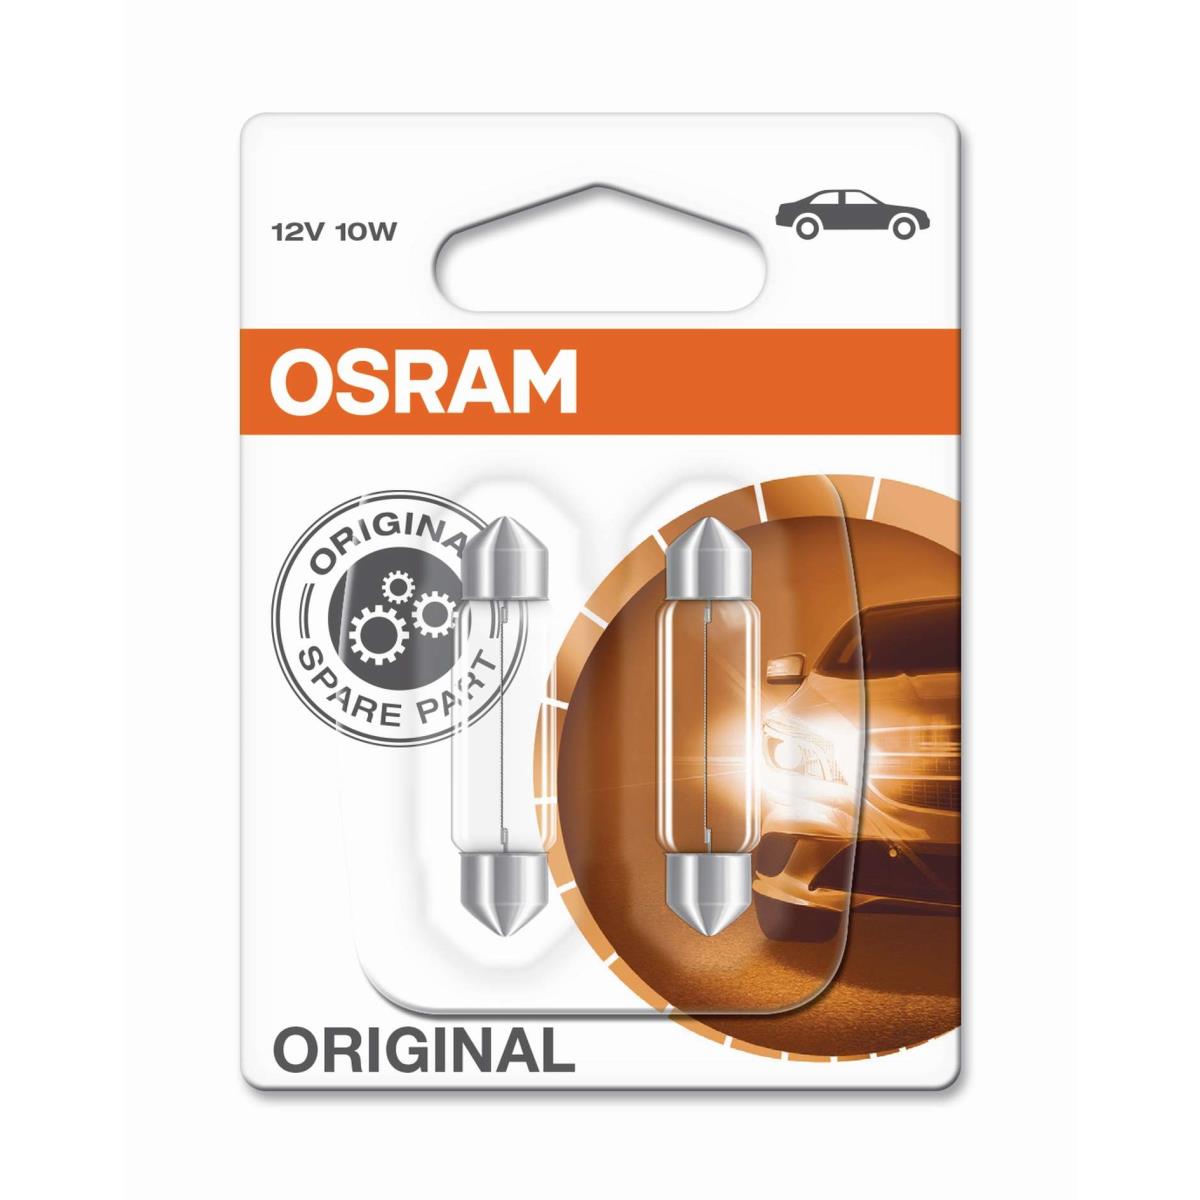 Osram Soffitte 10W 12V Sockel SV85 43 mm Lang Neu Innenbeleuchtung 1325518